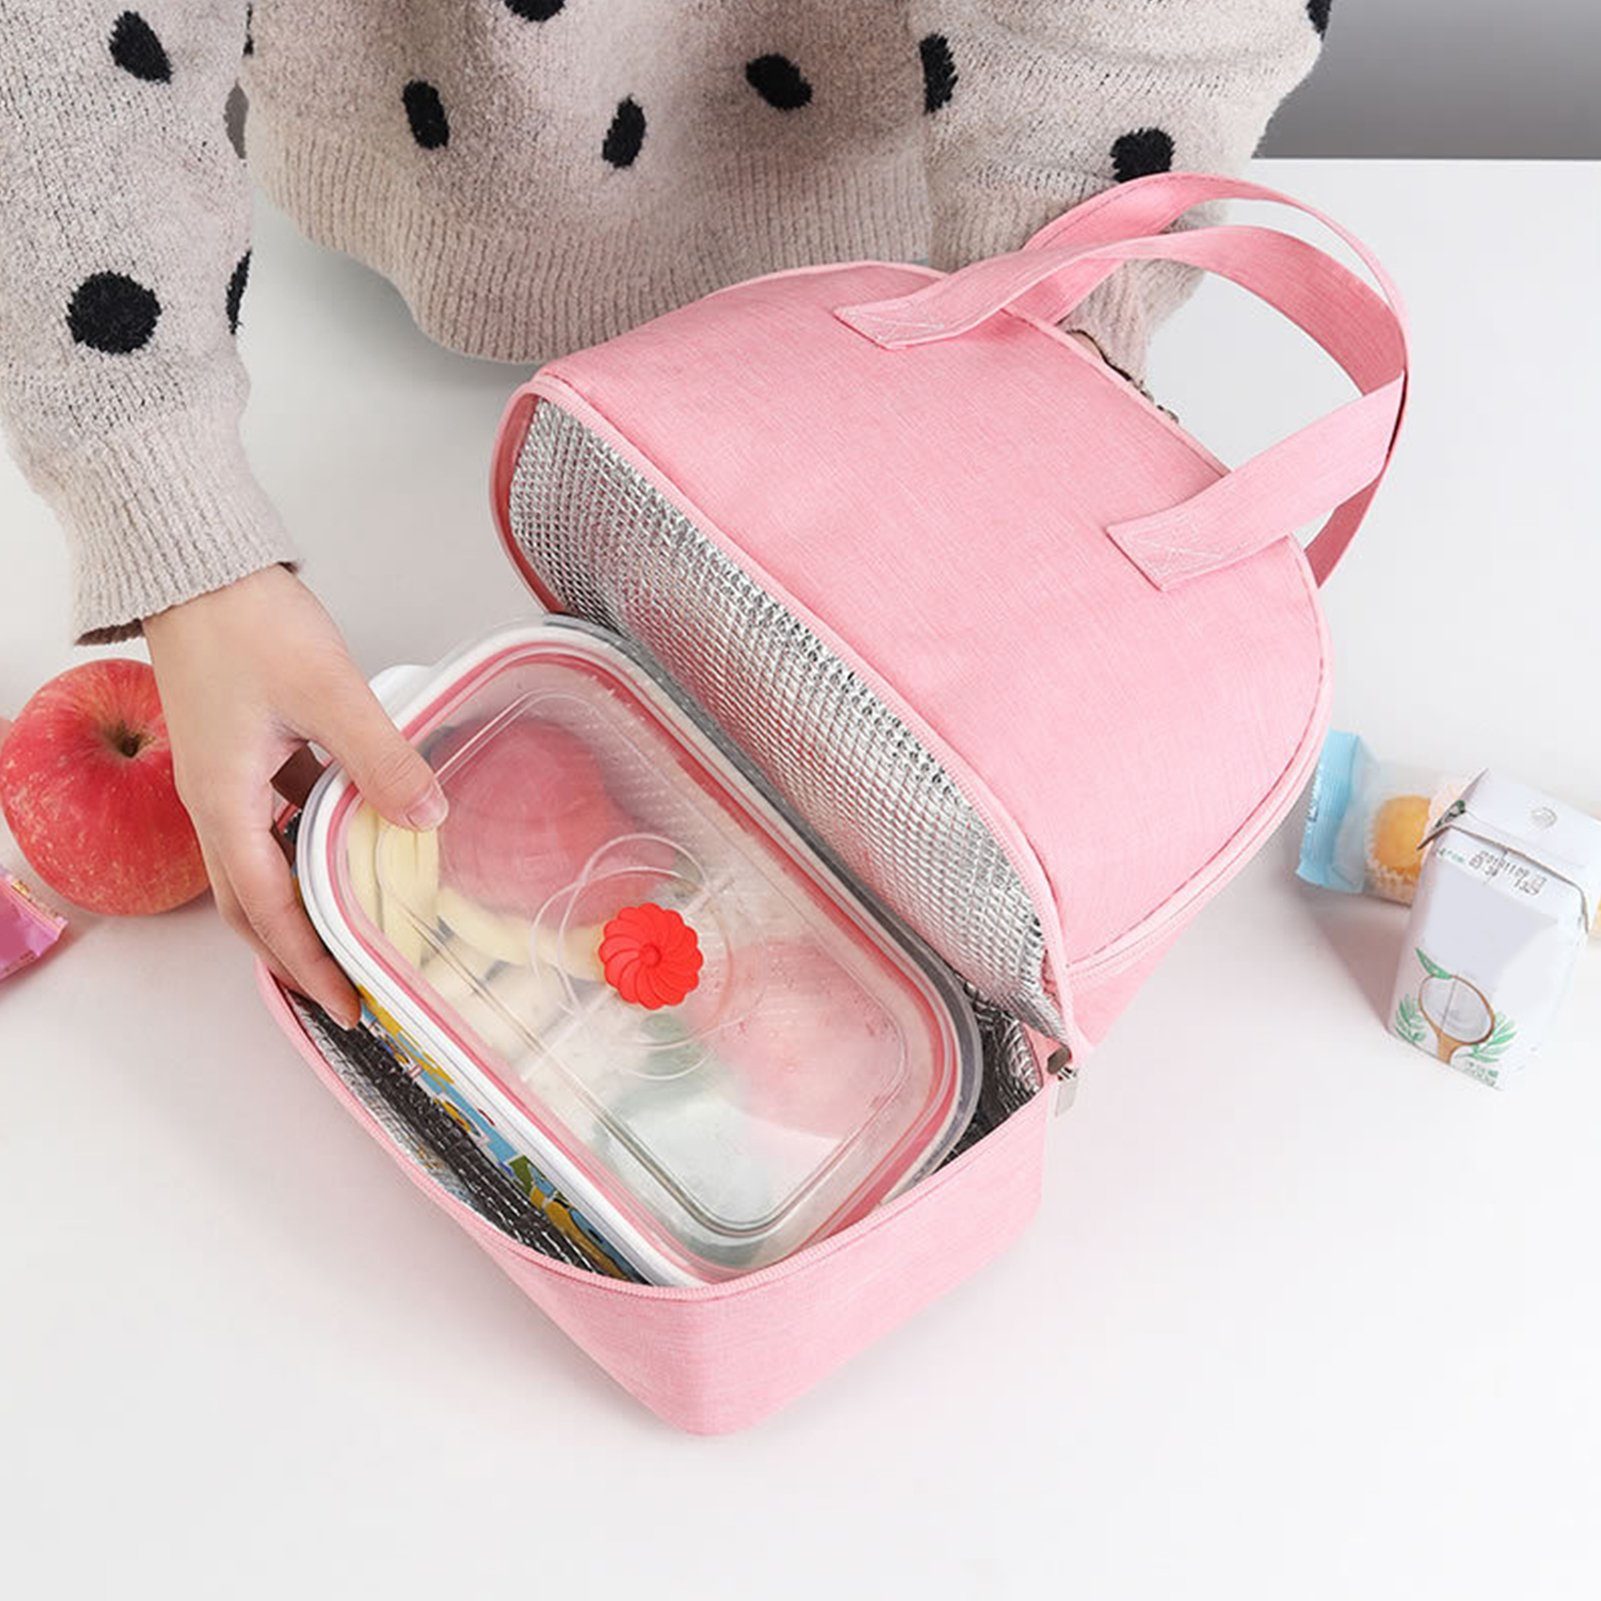 Grau süße Lunchtasche Popubear für Lunchboxen Lunch Auffangbehälter Bag Kühltasche